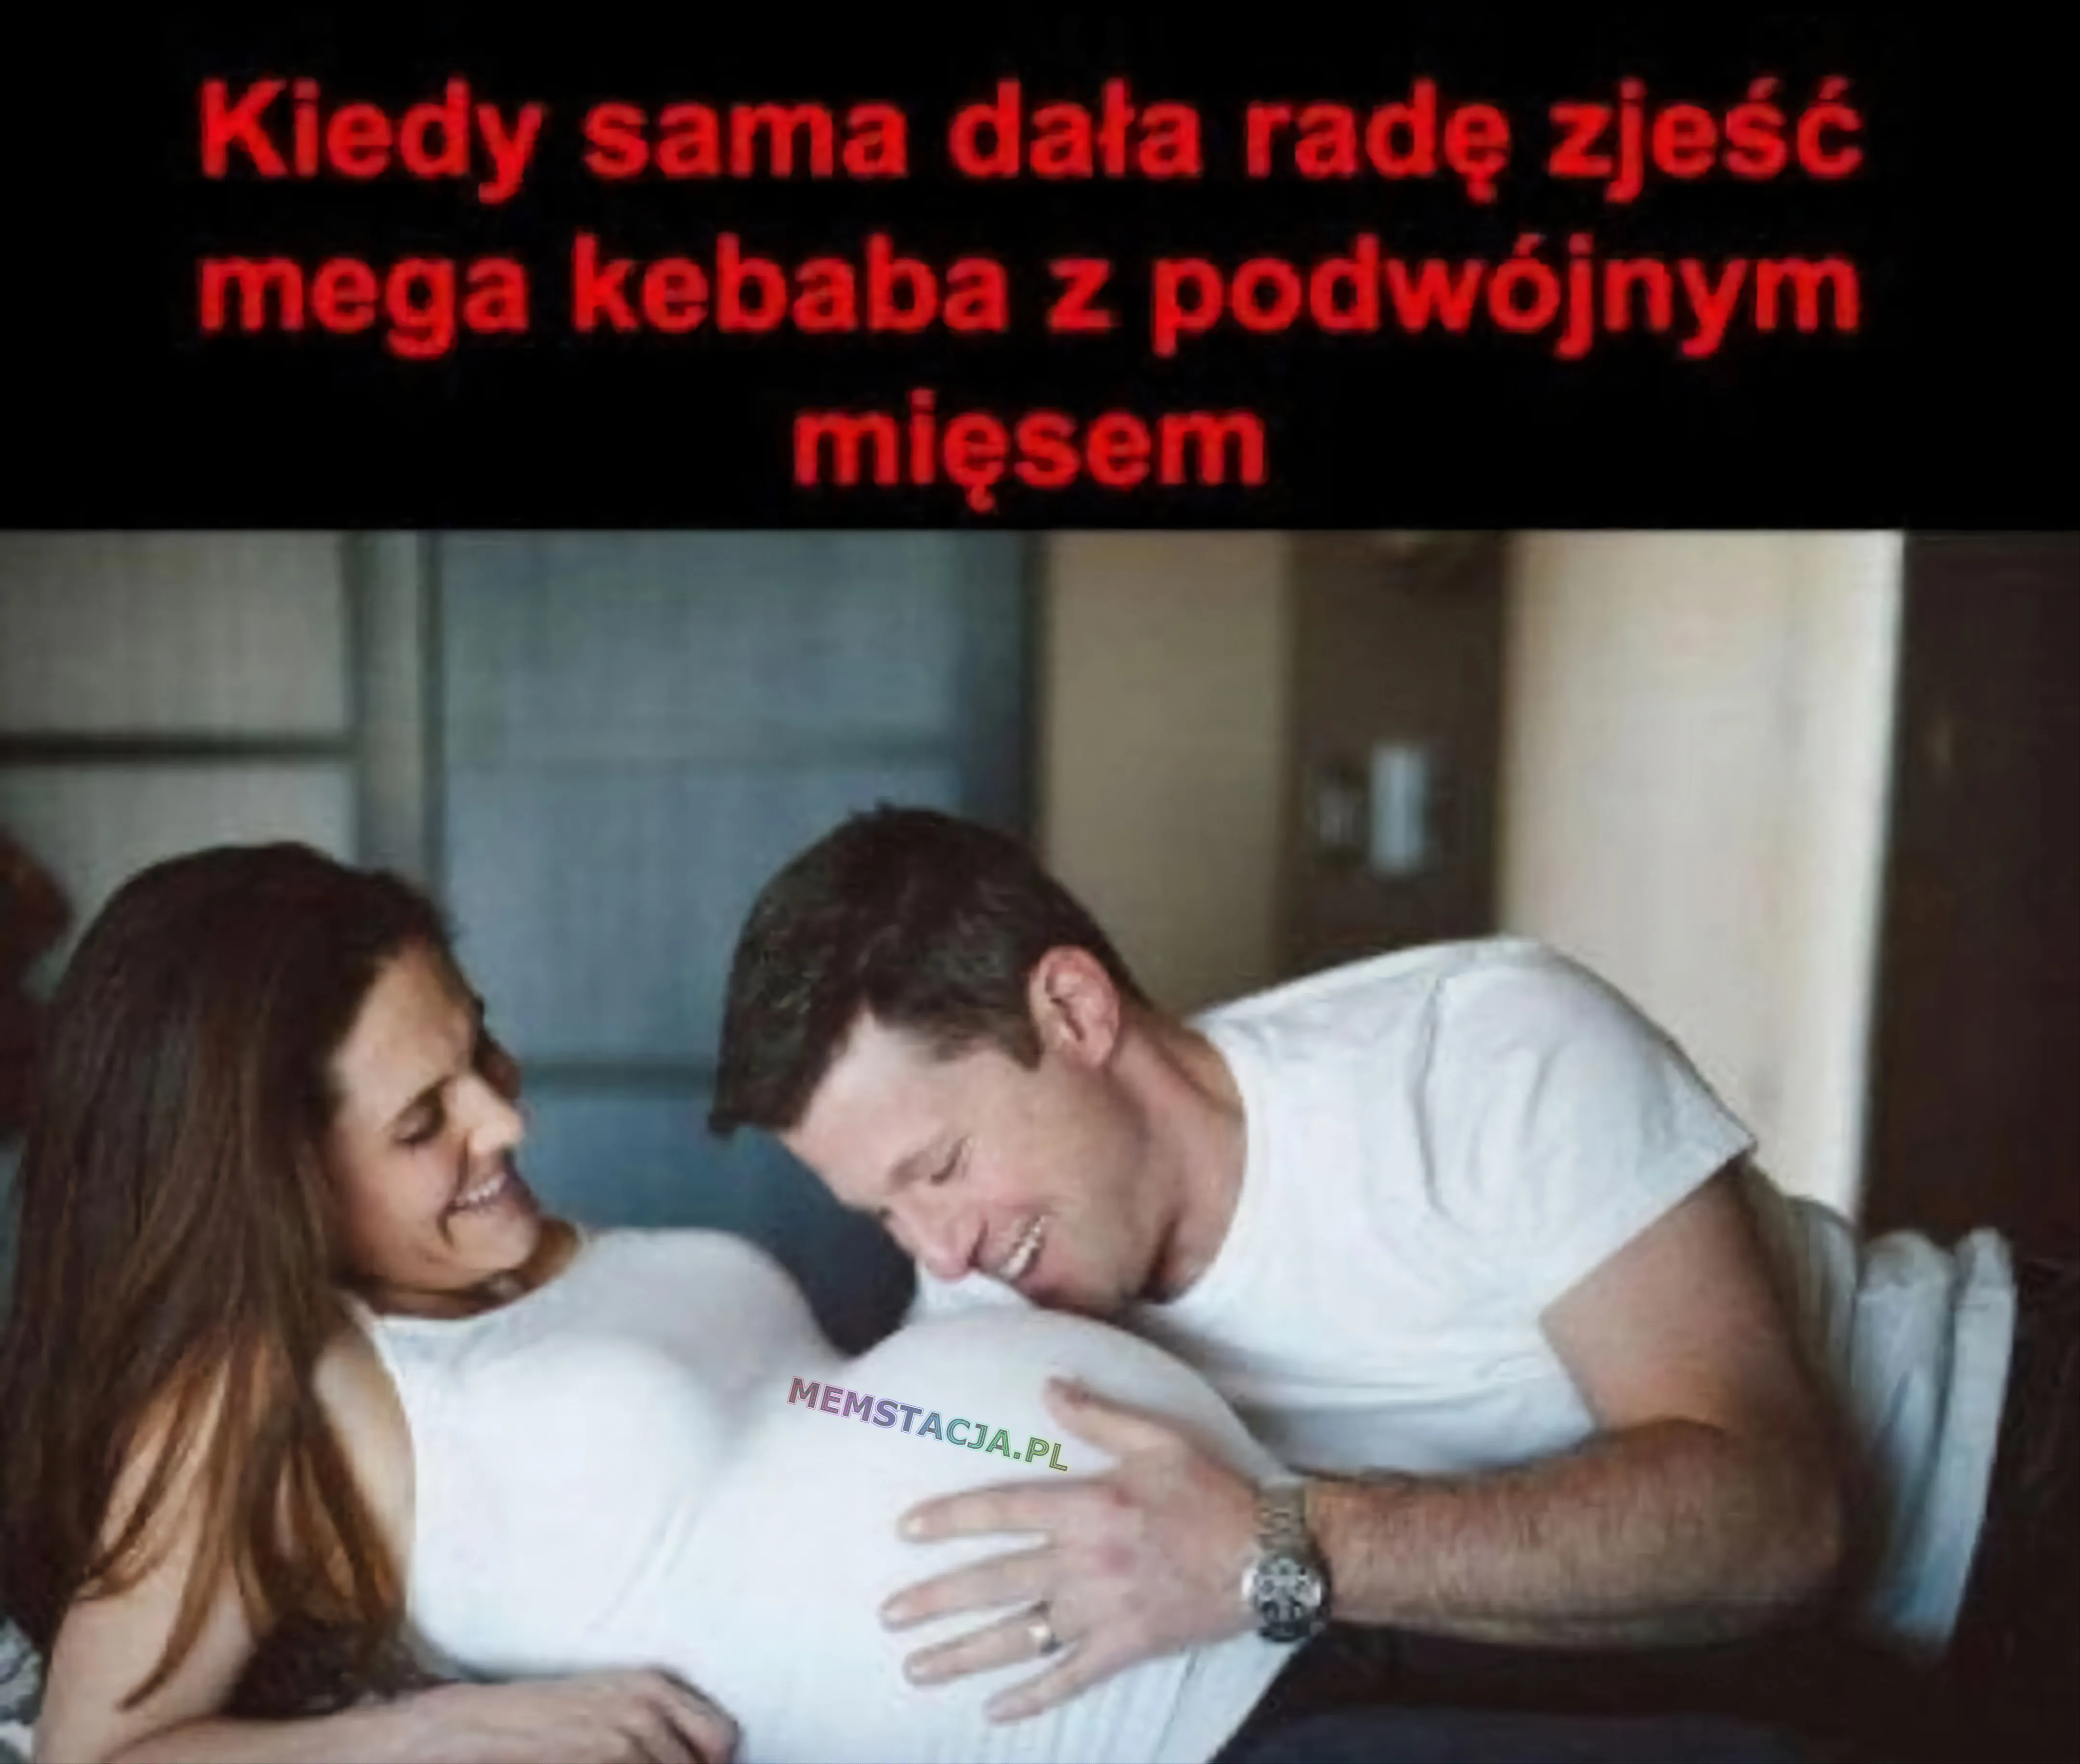 Zdjęcie przedstawiające kobietę w ciąży i mężczyznę przytulającego się do brzucha: 'Kiedy sama dała radę zjeść mega kebaba z podwójnym mięsem'